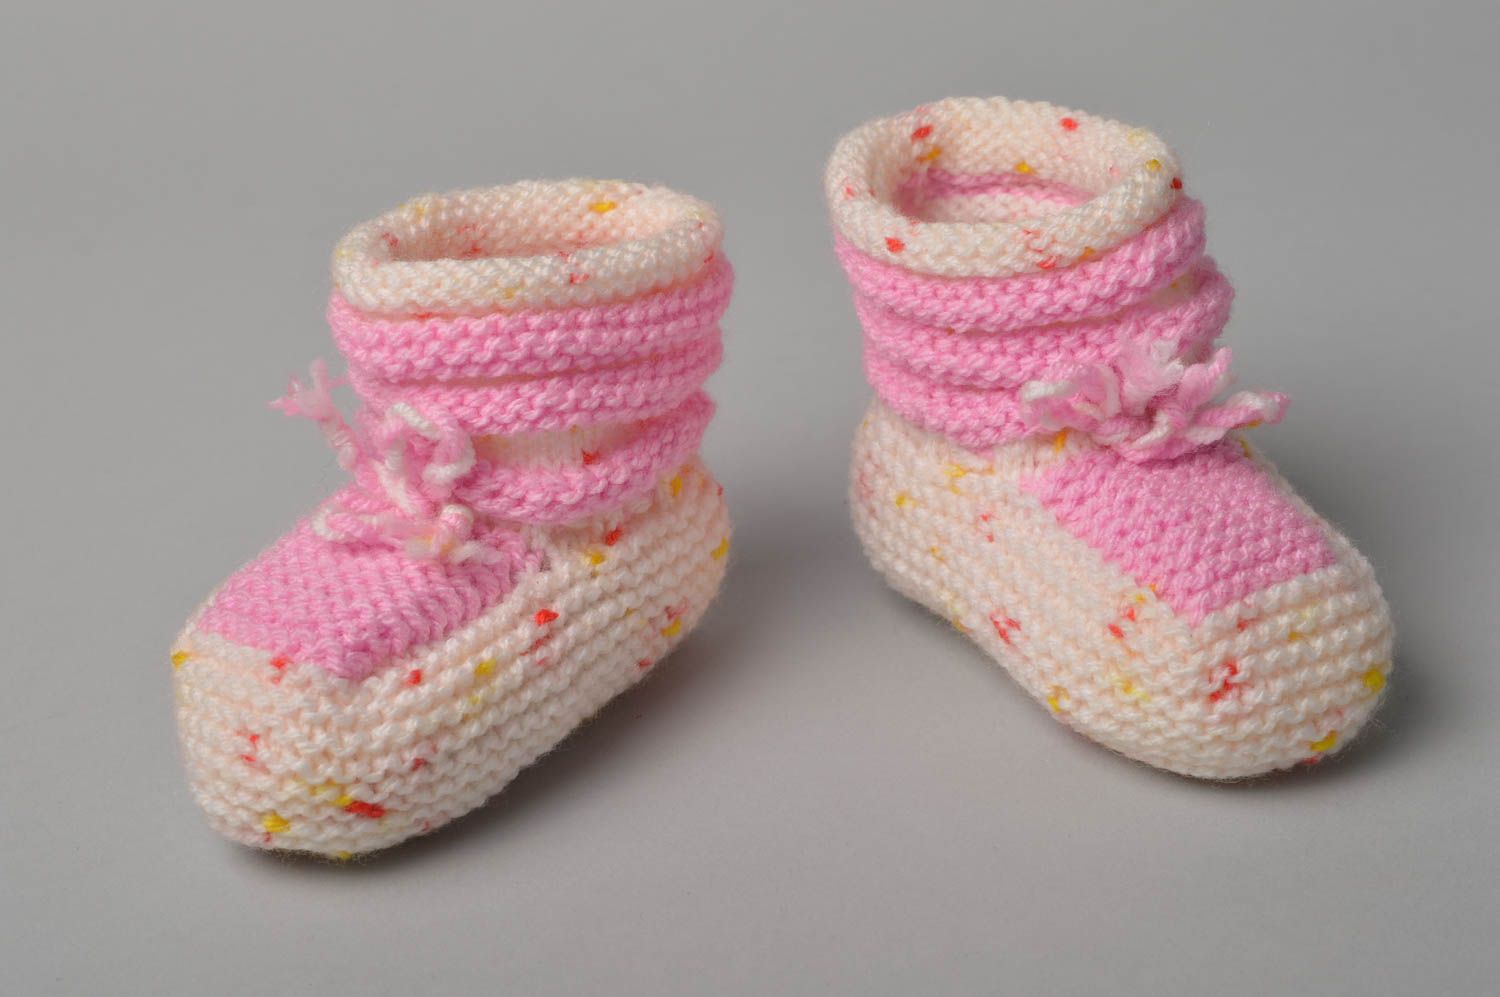 Handmade booties designer booties warm booties for newborn crocheted booties photo 1